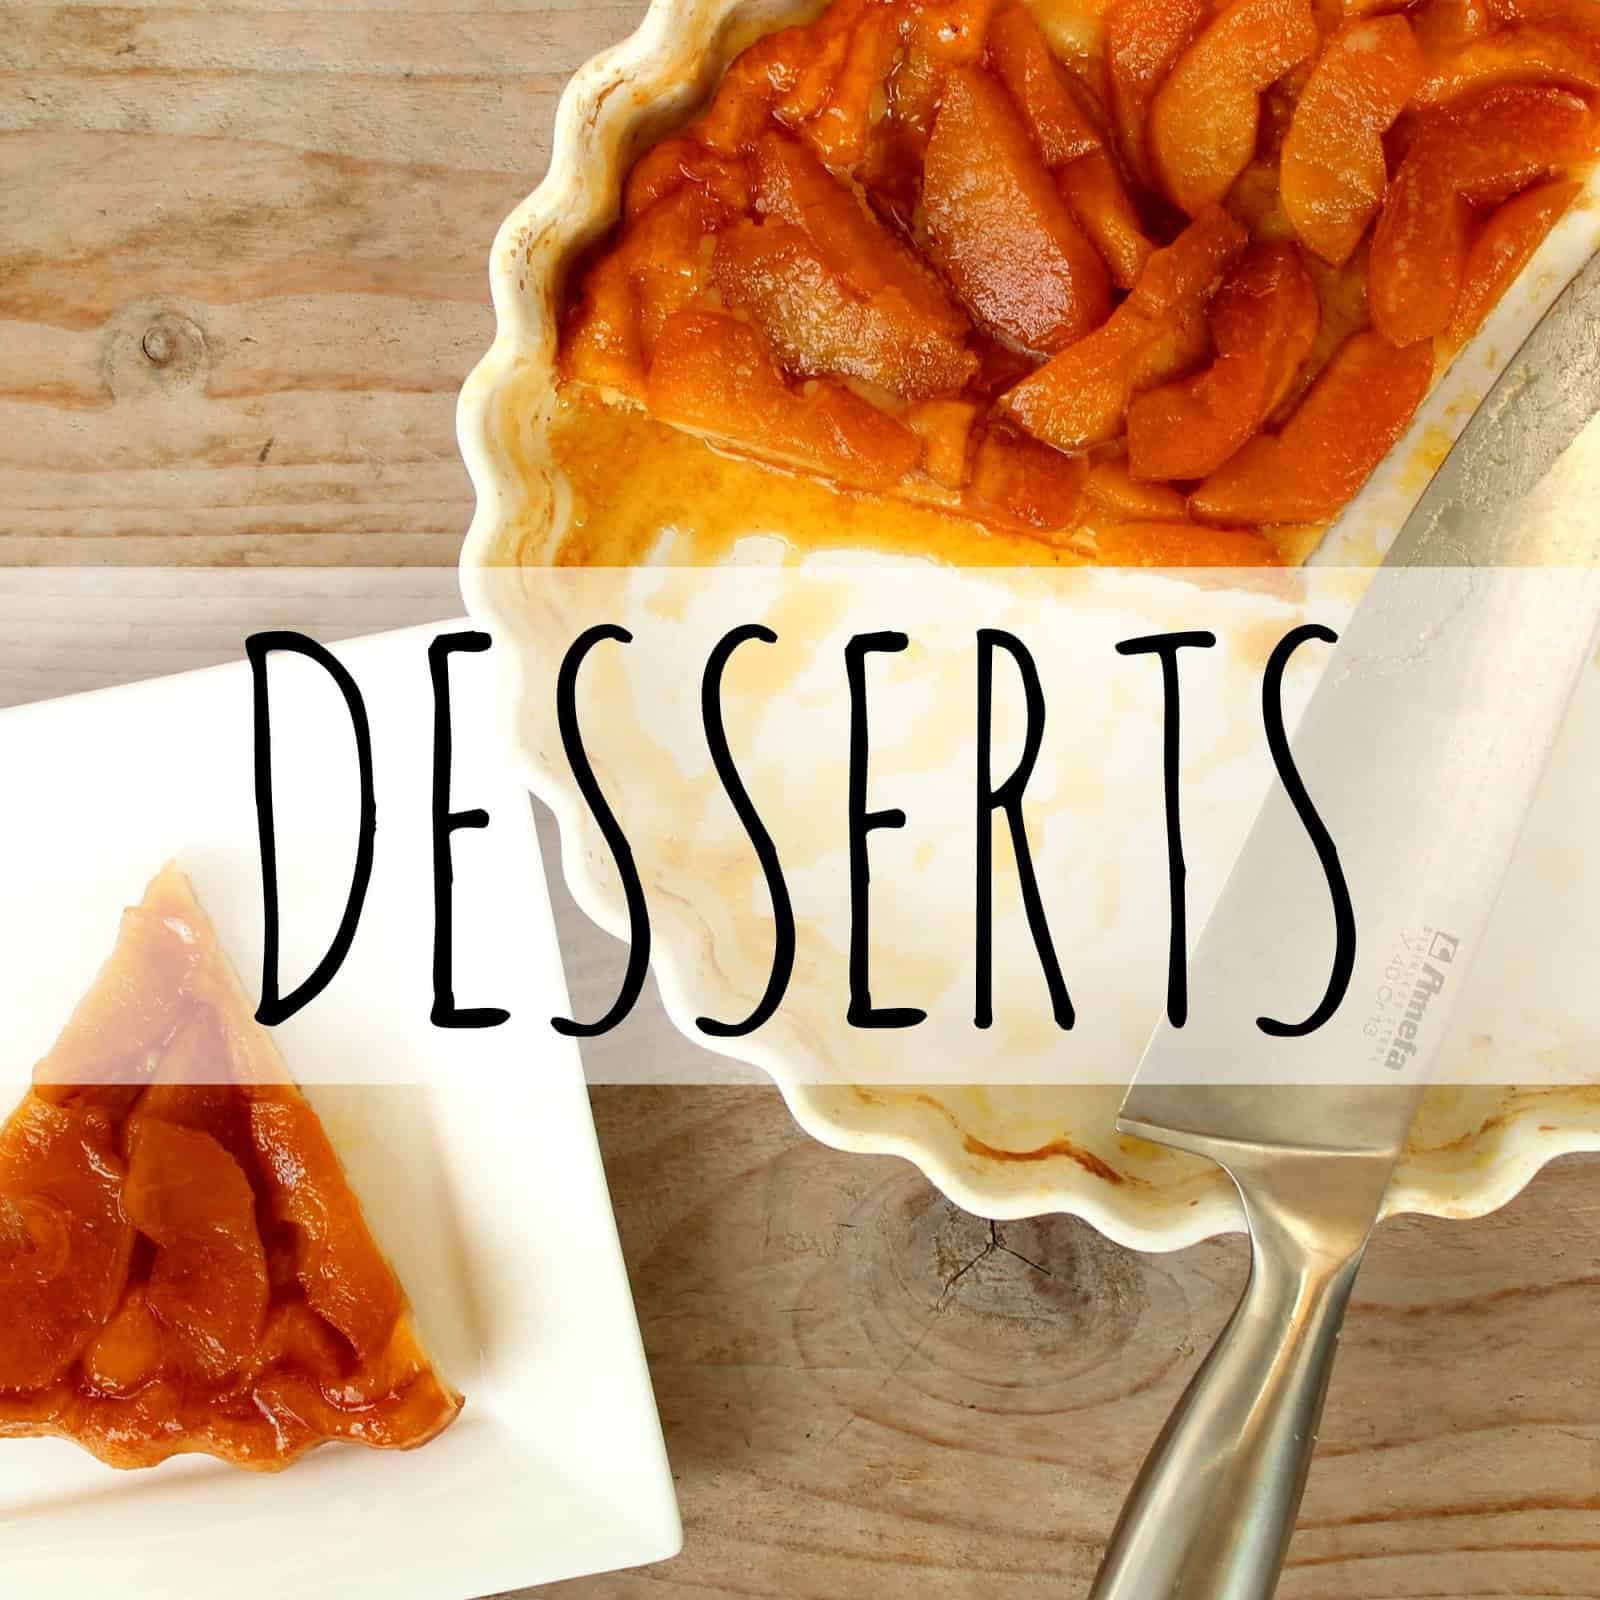 overzicht desserts